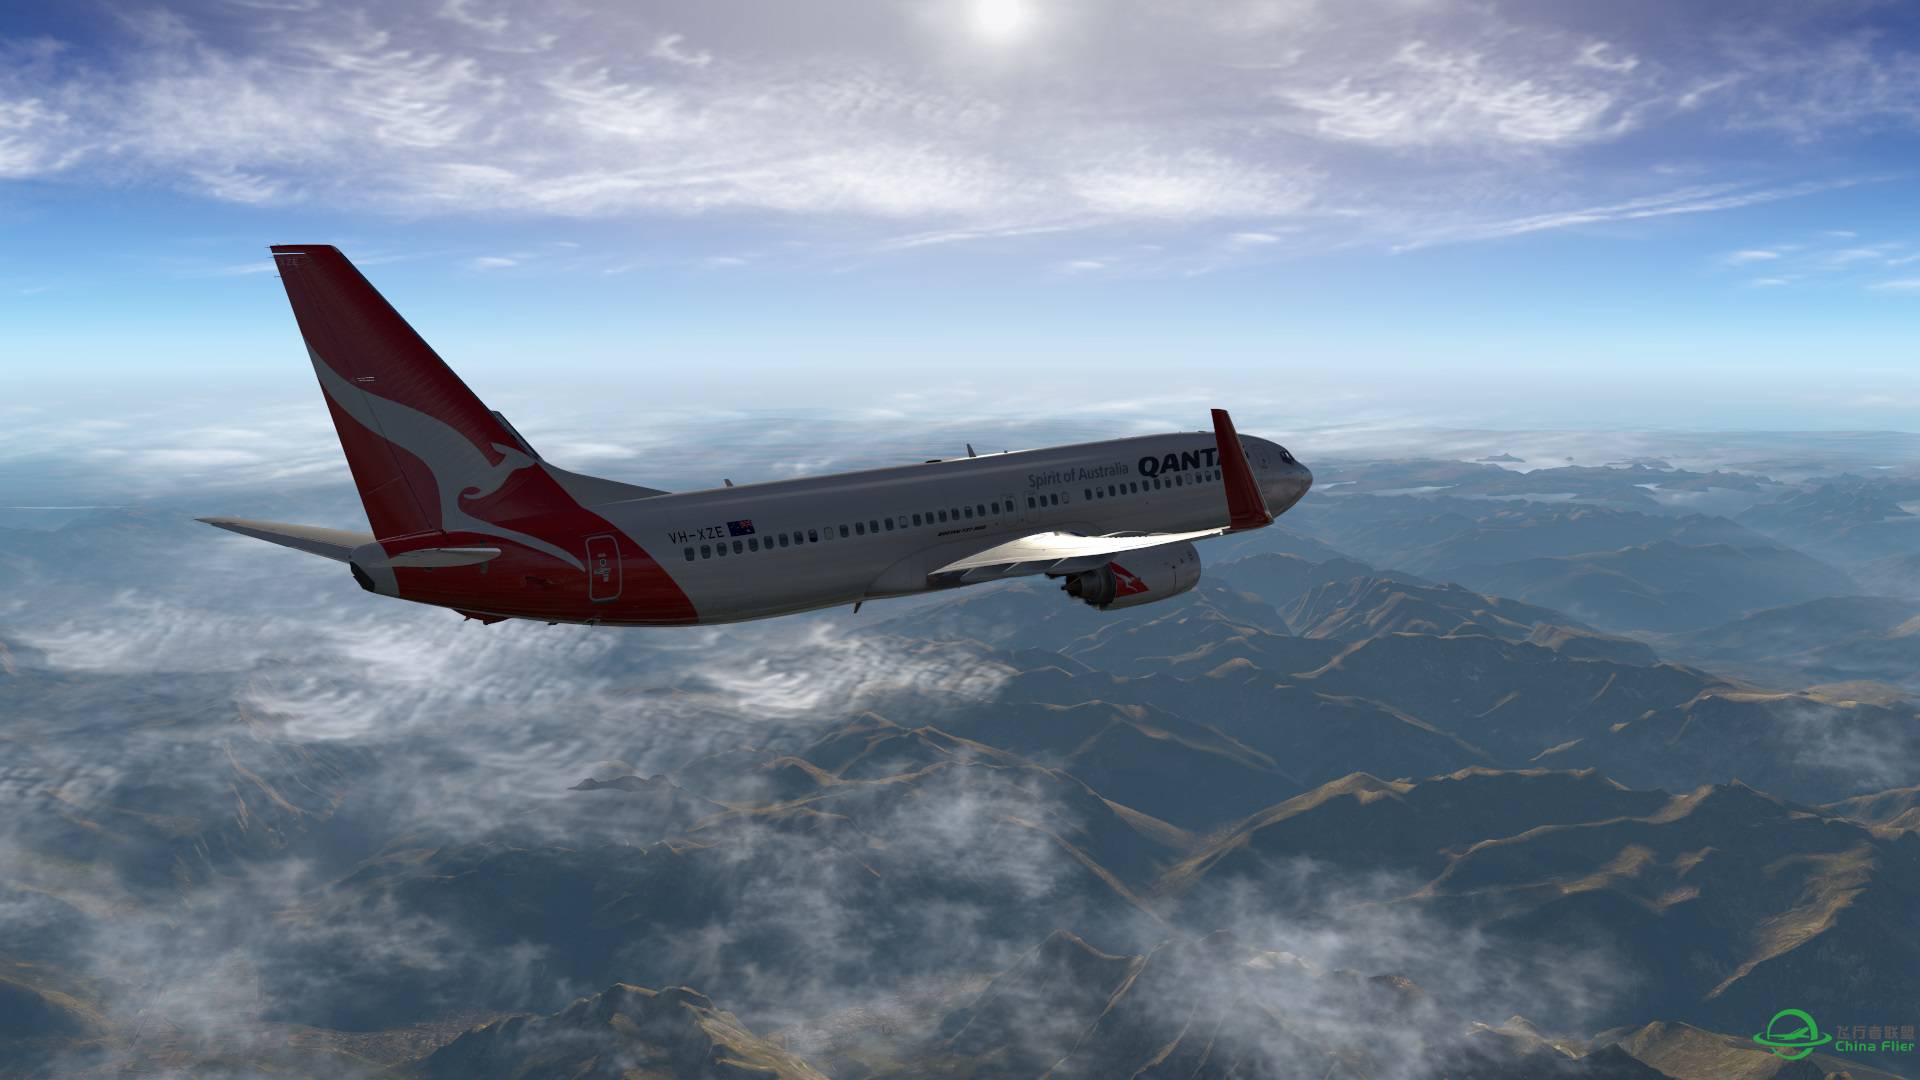 飞跃阿尔卑斯山 X-plane 11-3961 